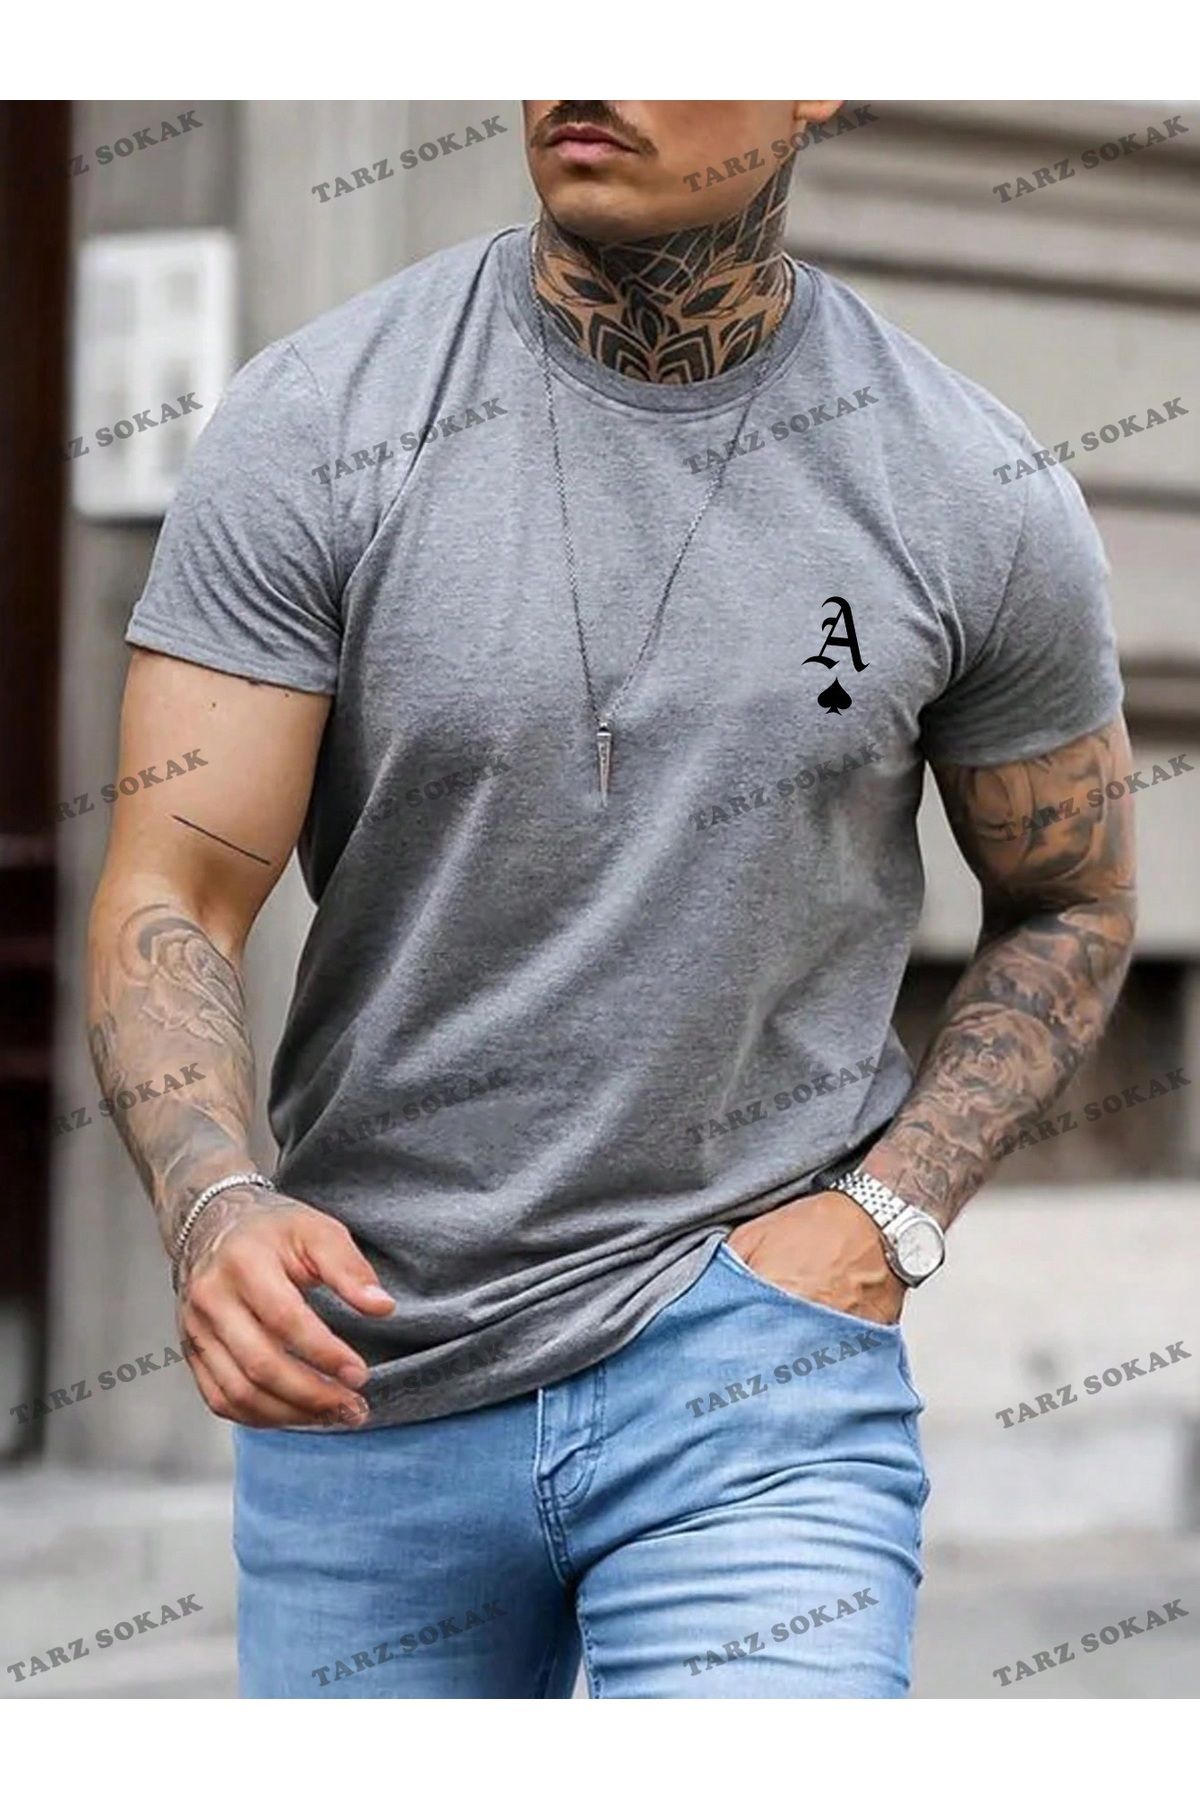 Tarzsokak KOD Trend Homme Erkek Oyun Kartı Baskılı Tişört